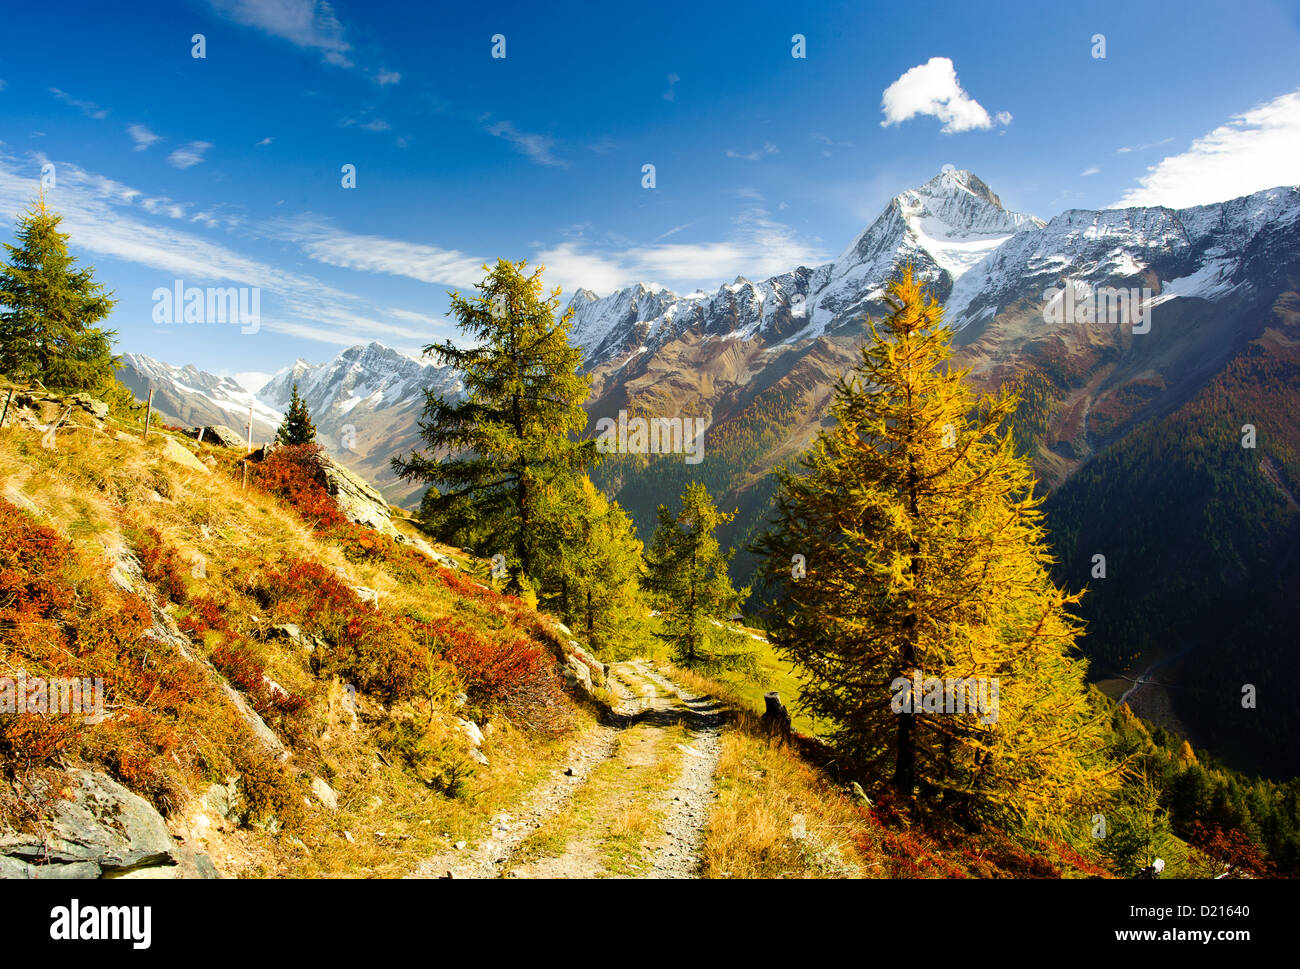 Bietschorn picco di montagna in autunno con il sentiero escursionistico. Vista da Laucheralp, Loetschental, Vallese, Svizzera Foto Stock